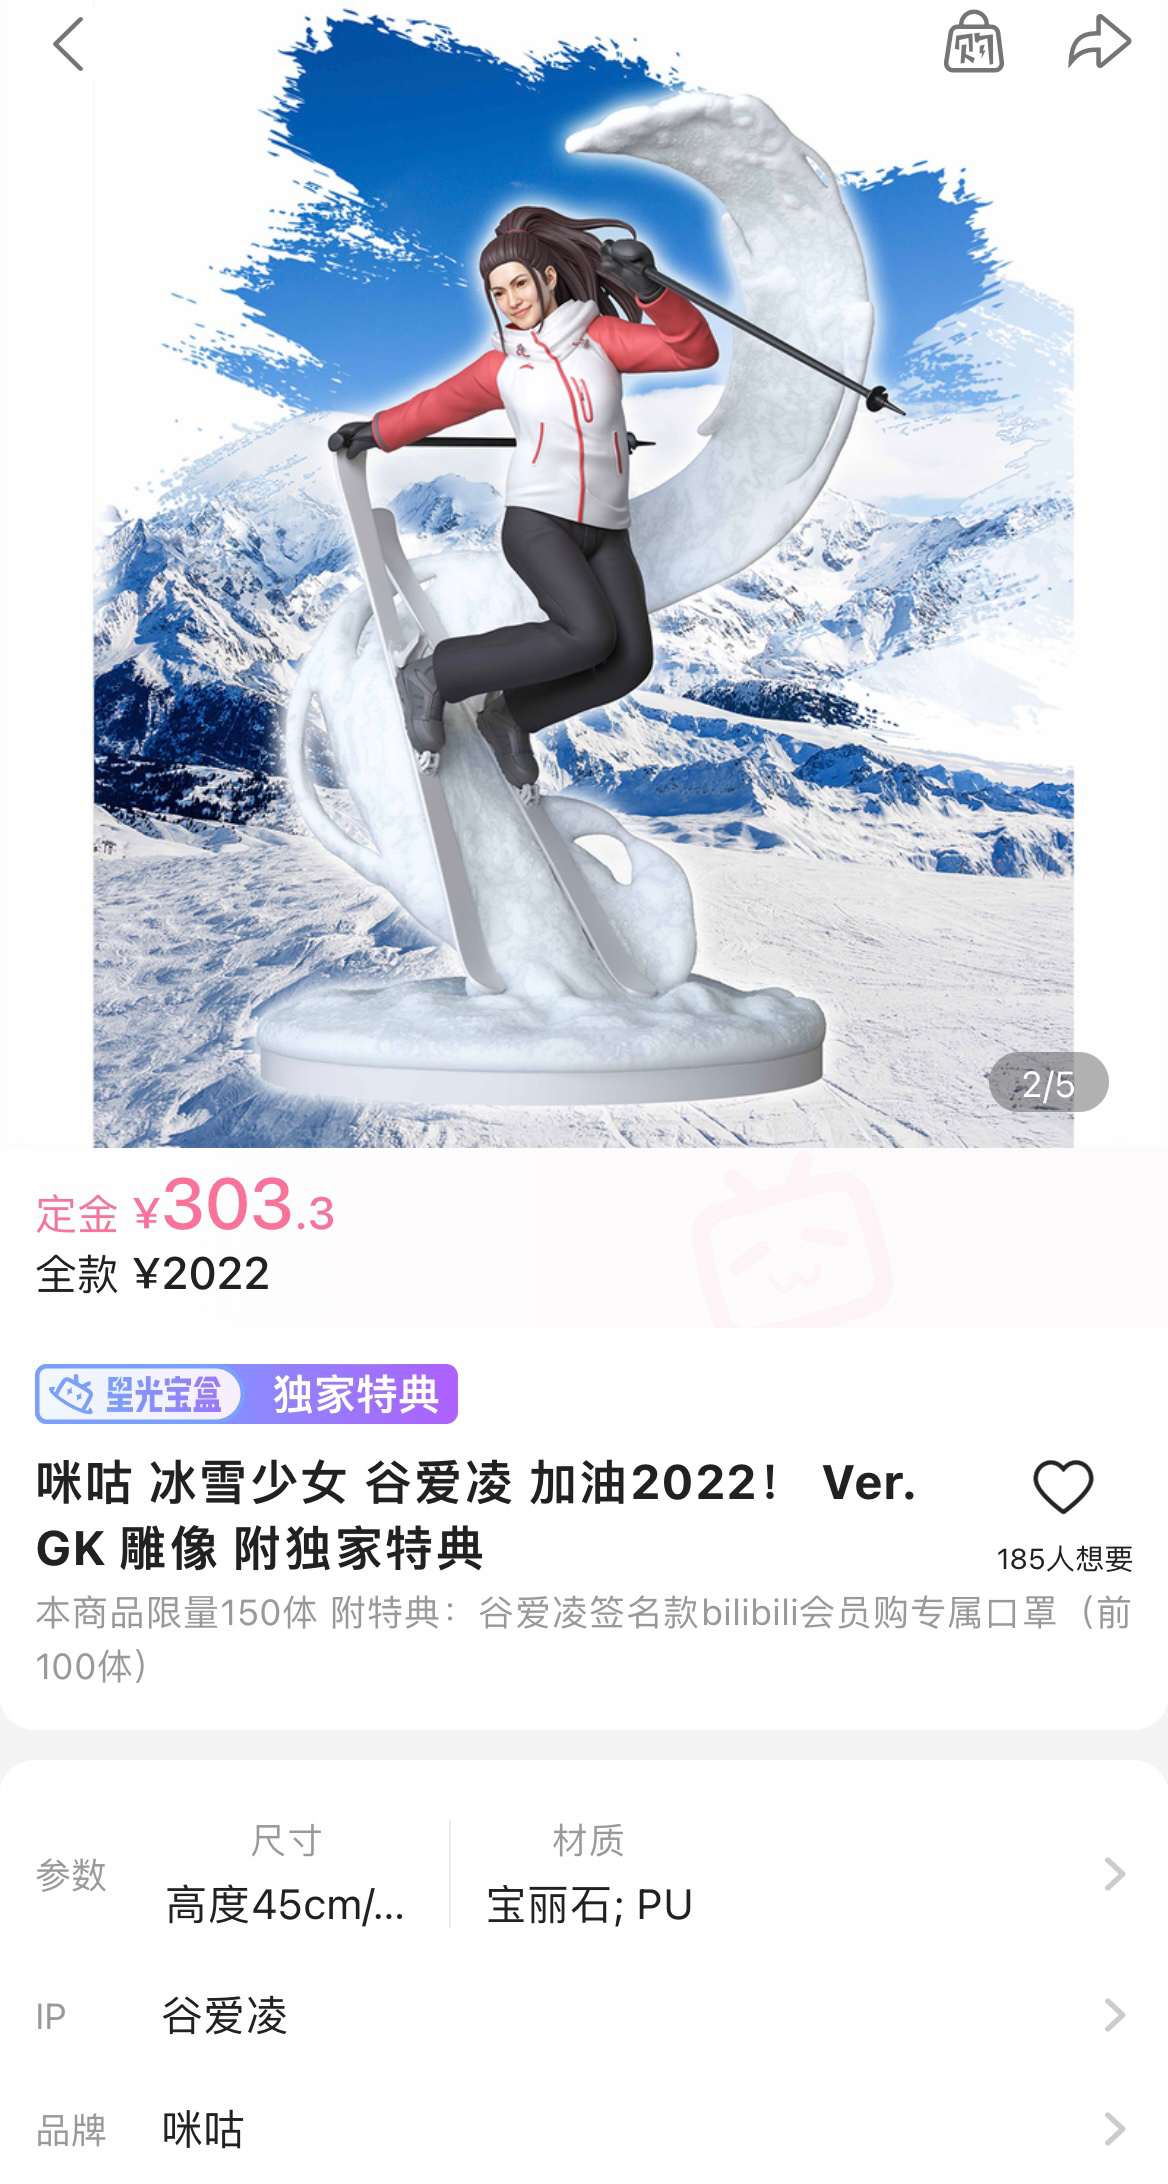 米谷推出雪姑娘“谷爱玲”加油2022！佛的雕像。2022元。